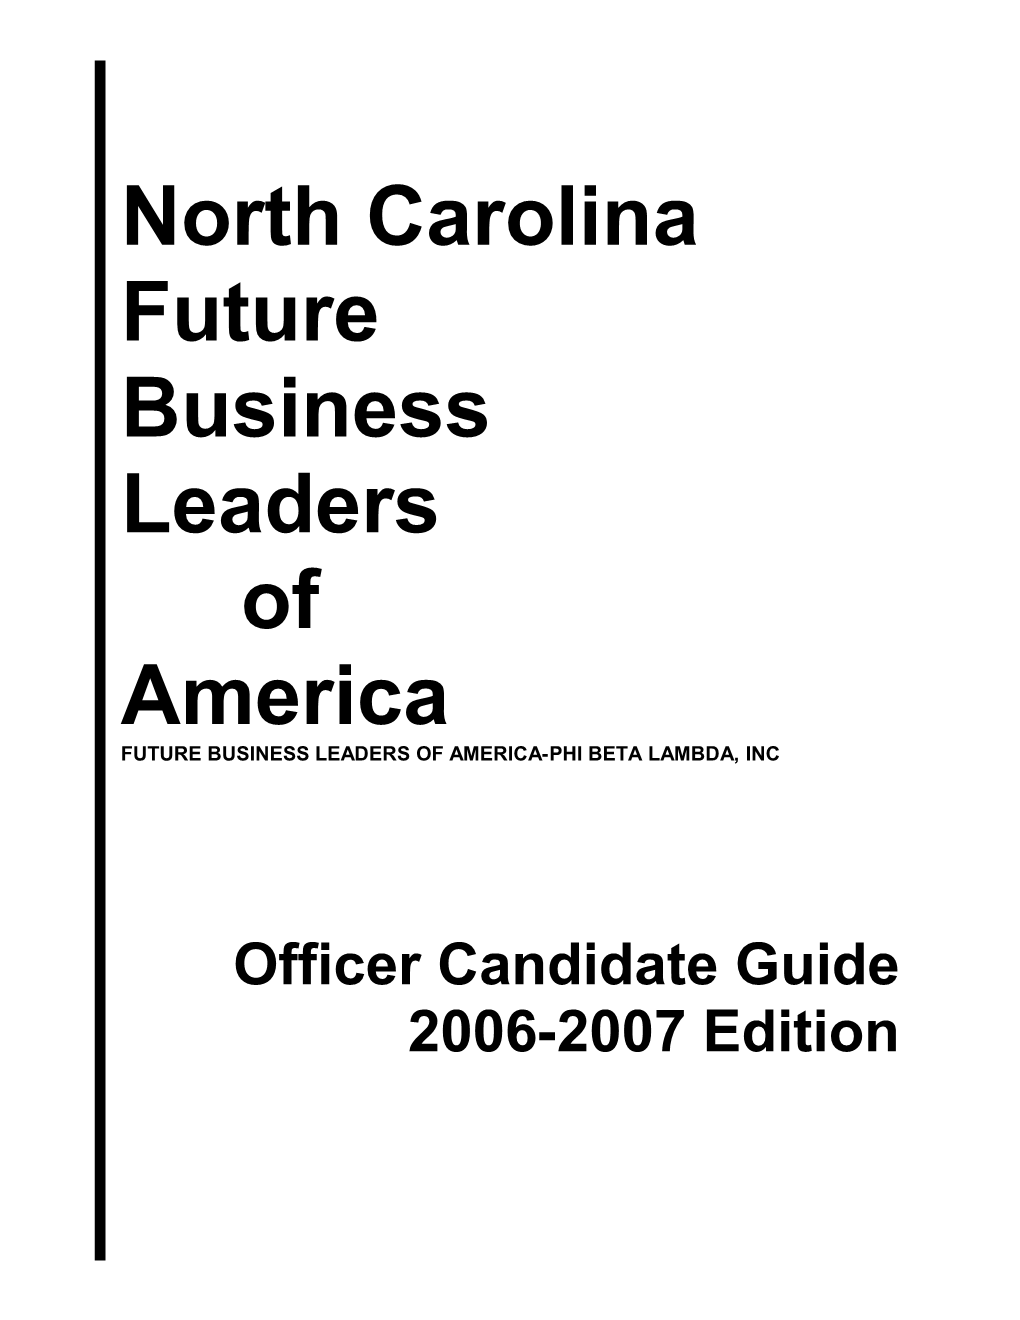 Future Business Leaders of America-Phi Beta Lambda, Inc